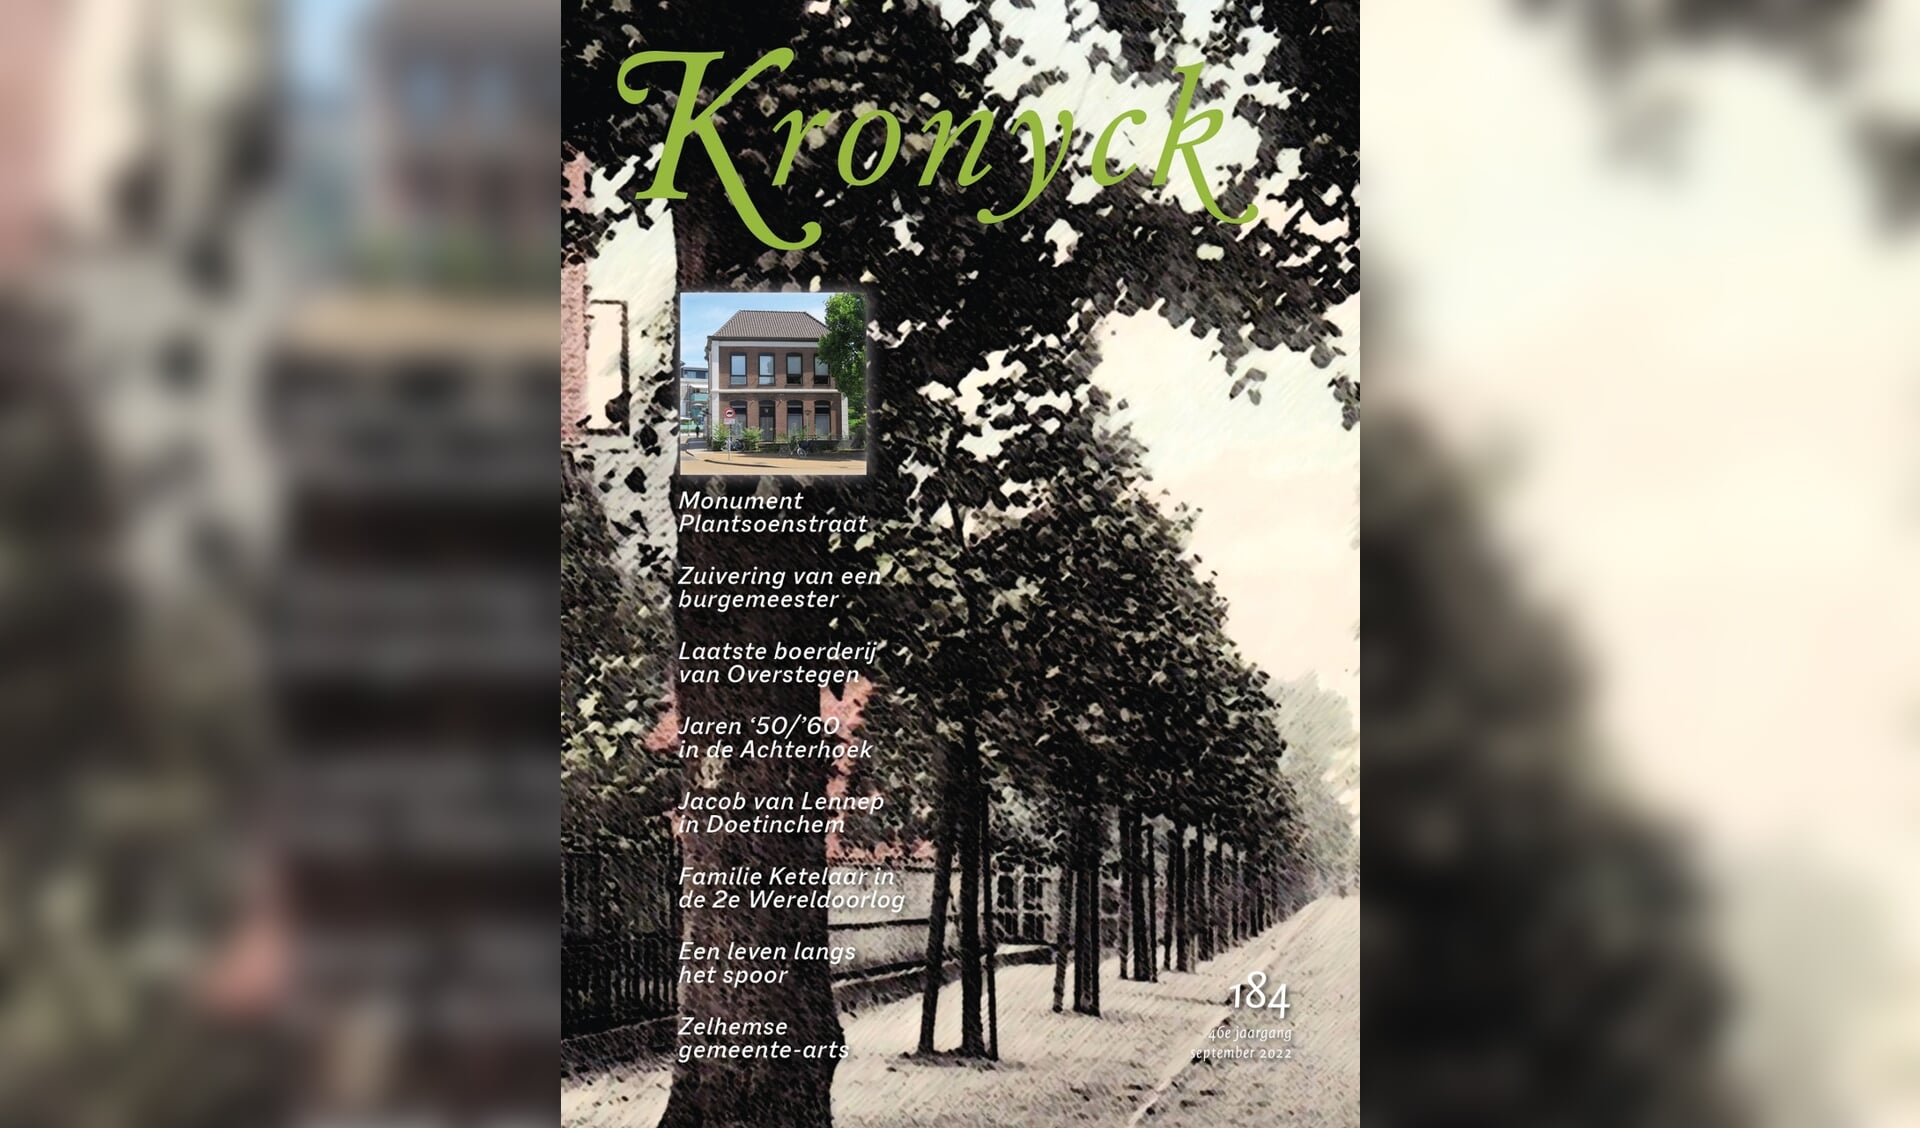 De voorpagina van de nieuwe Kronyck. Foto: PR